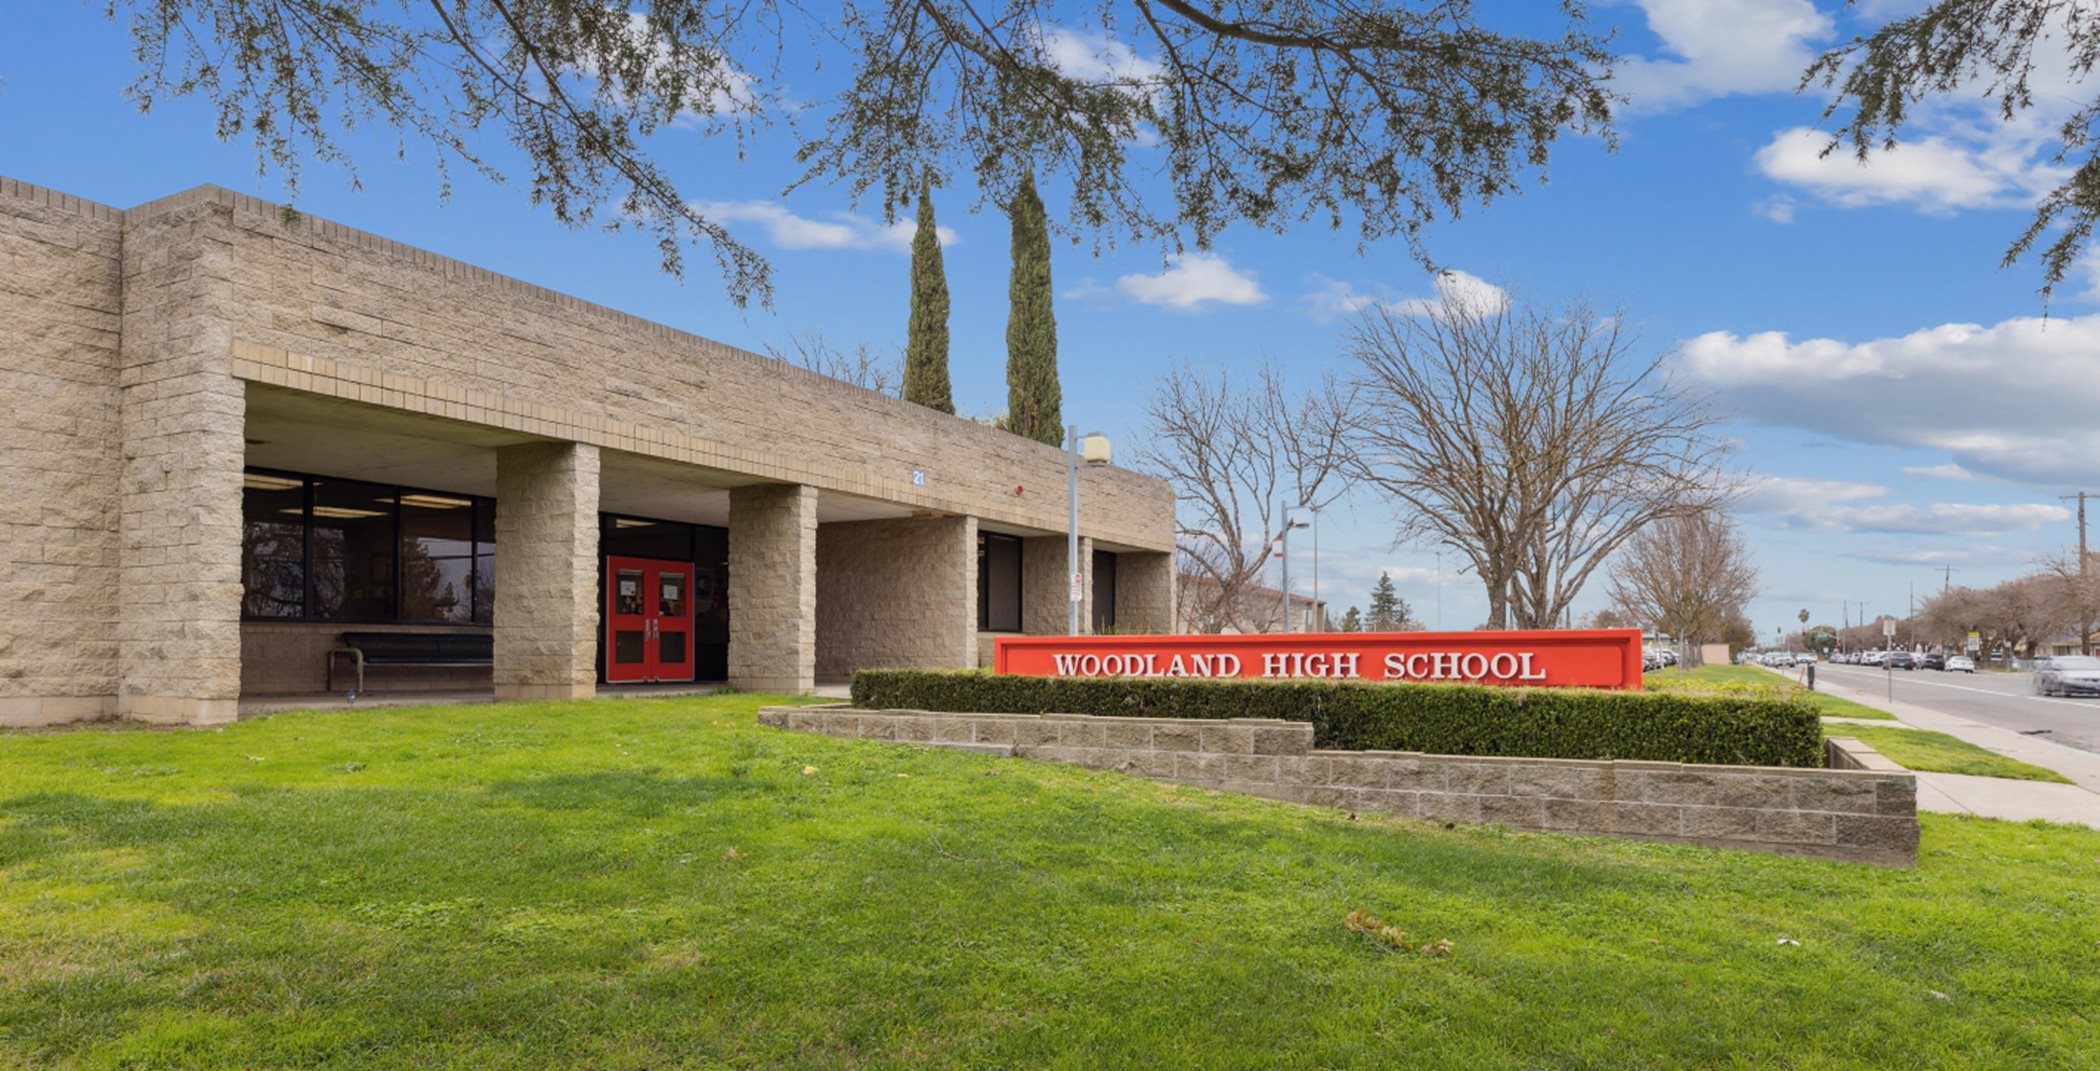 Woodland High School entrance